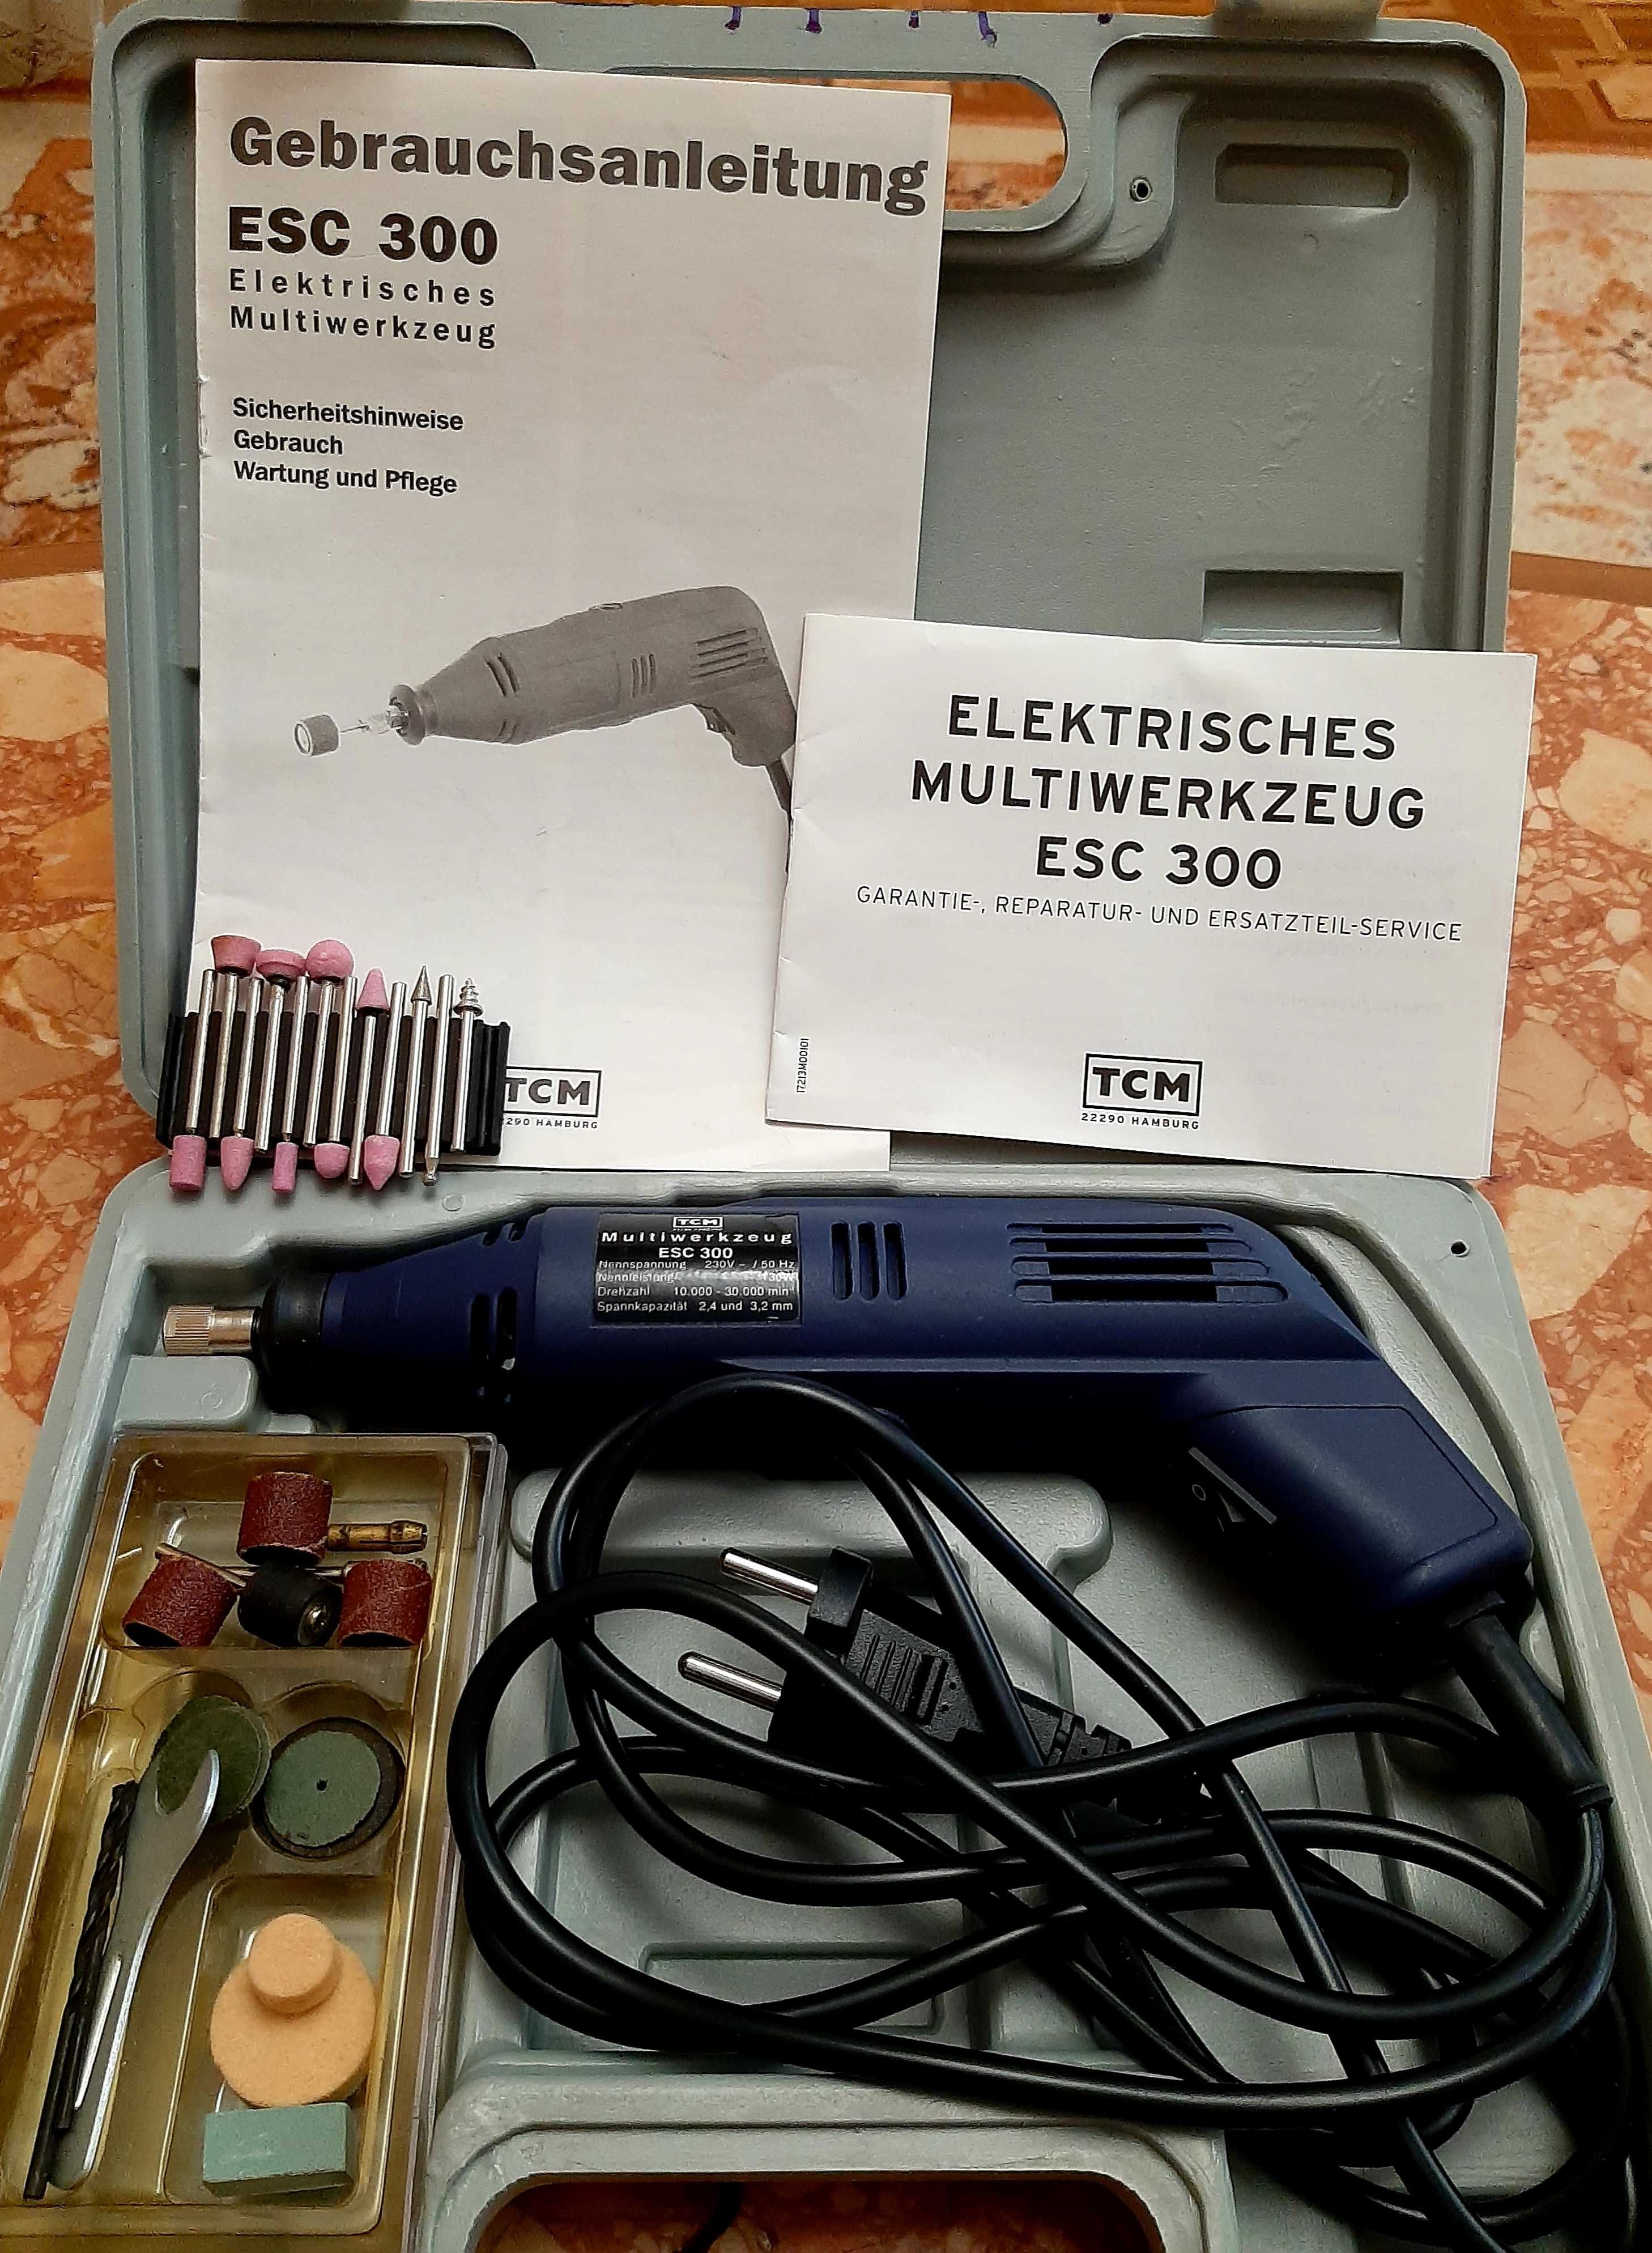 Шлифовально-гравировальный инструмент TCM ESC 300. Германия.